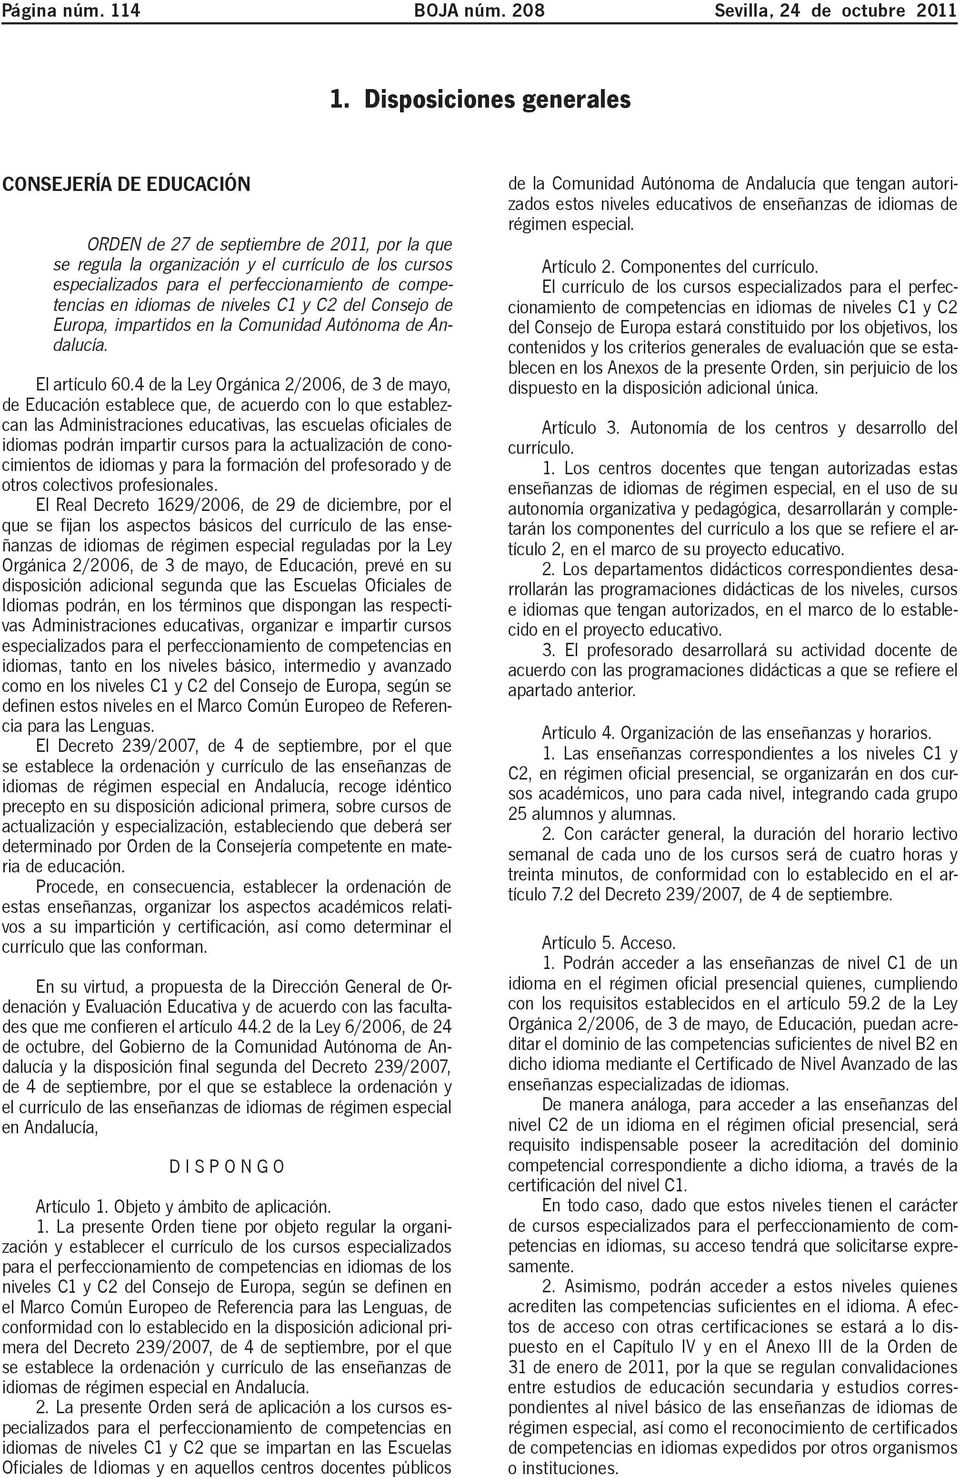 competencias en idiomas de niveles C1 y C2 del Consejo de Europa, impartidos en la Comunidad Autónoma de Andalucía. El artículo 60.